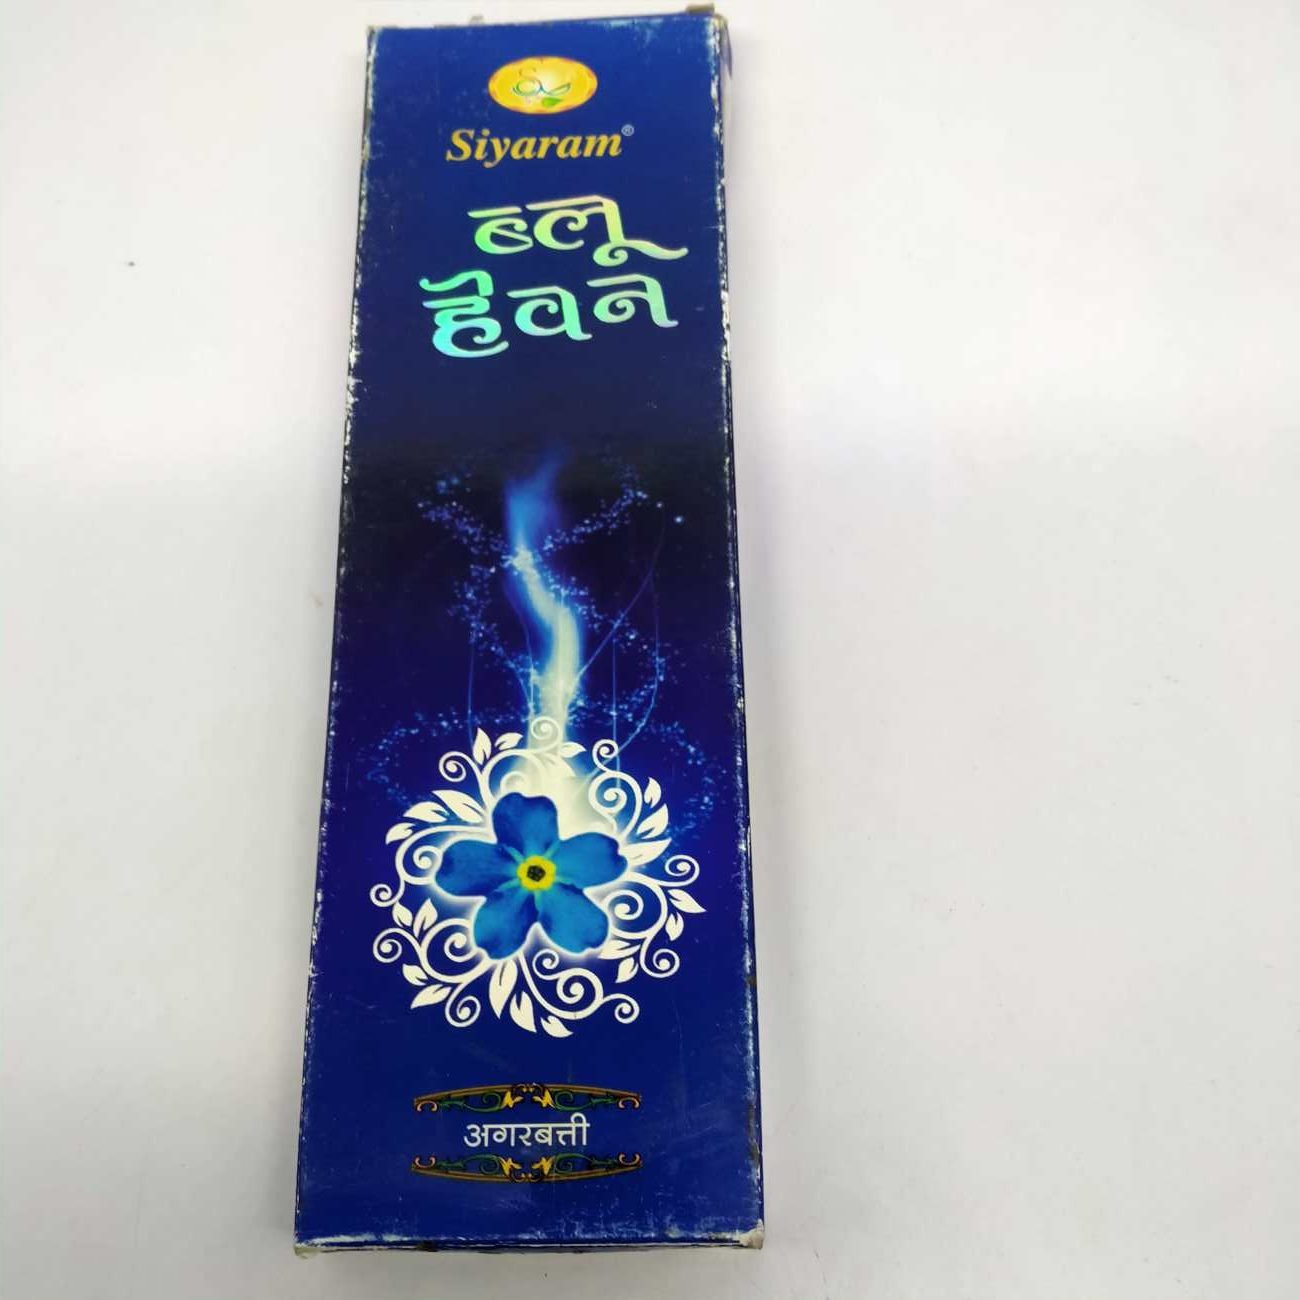 Siyaram Blue Heaven Aggarbati, 45 grams